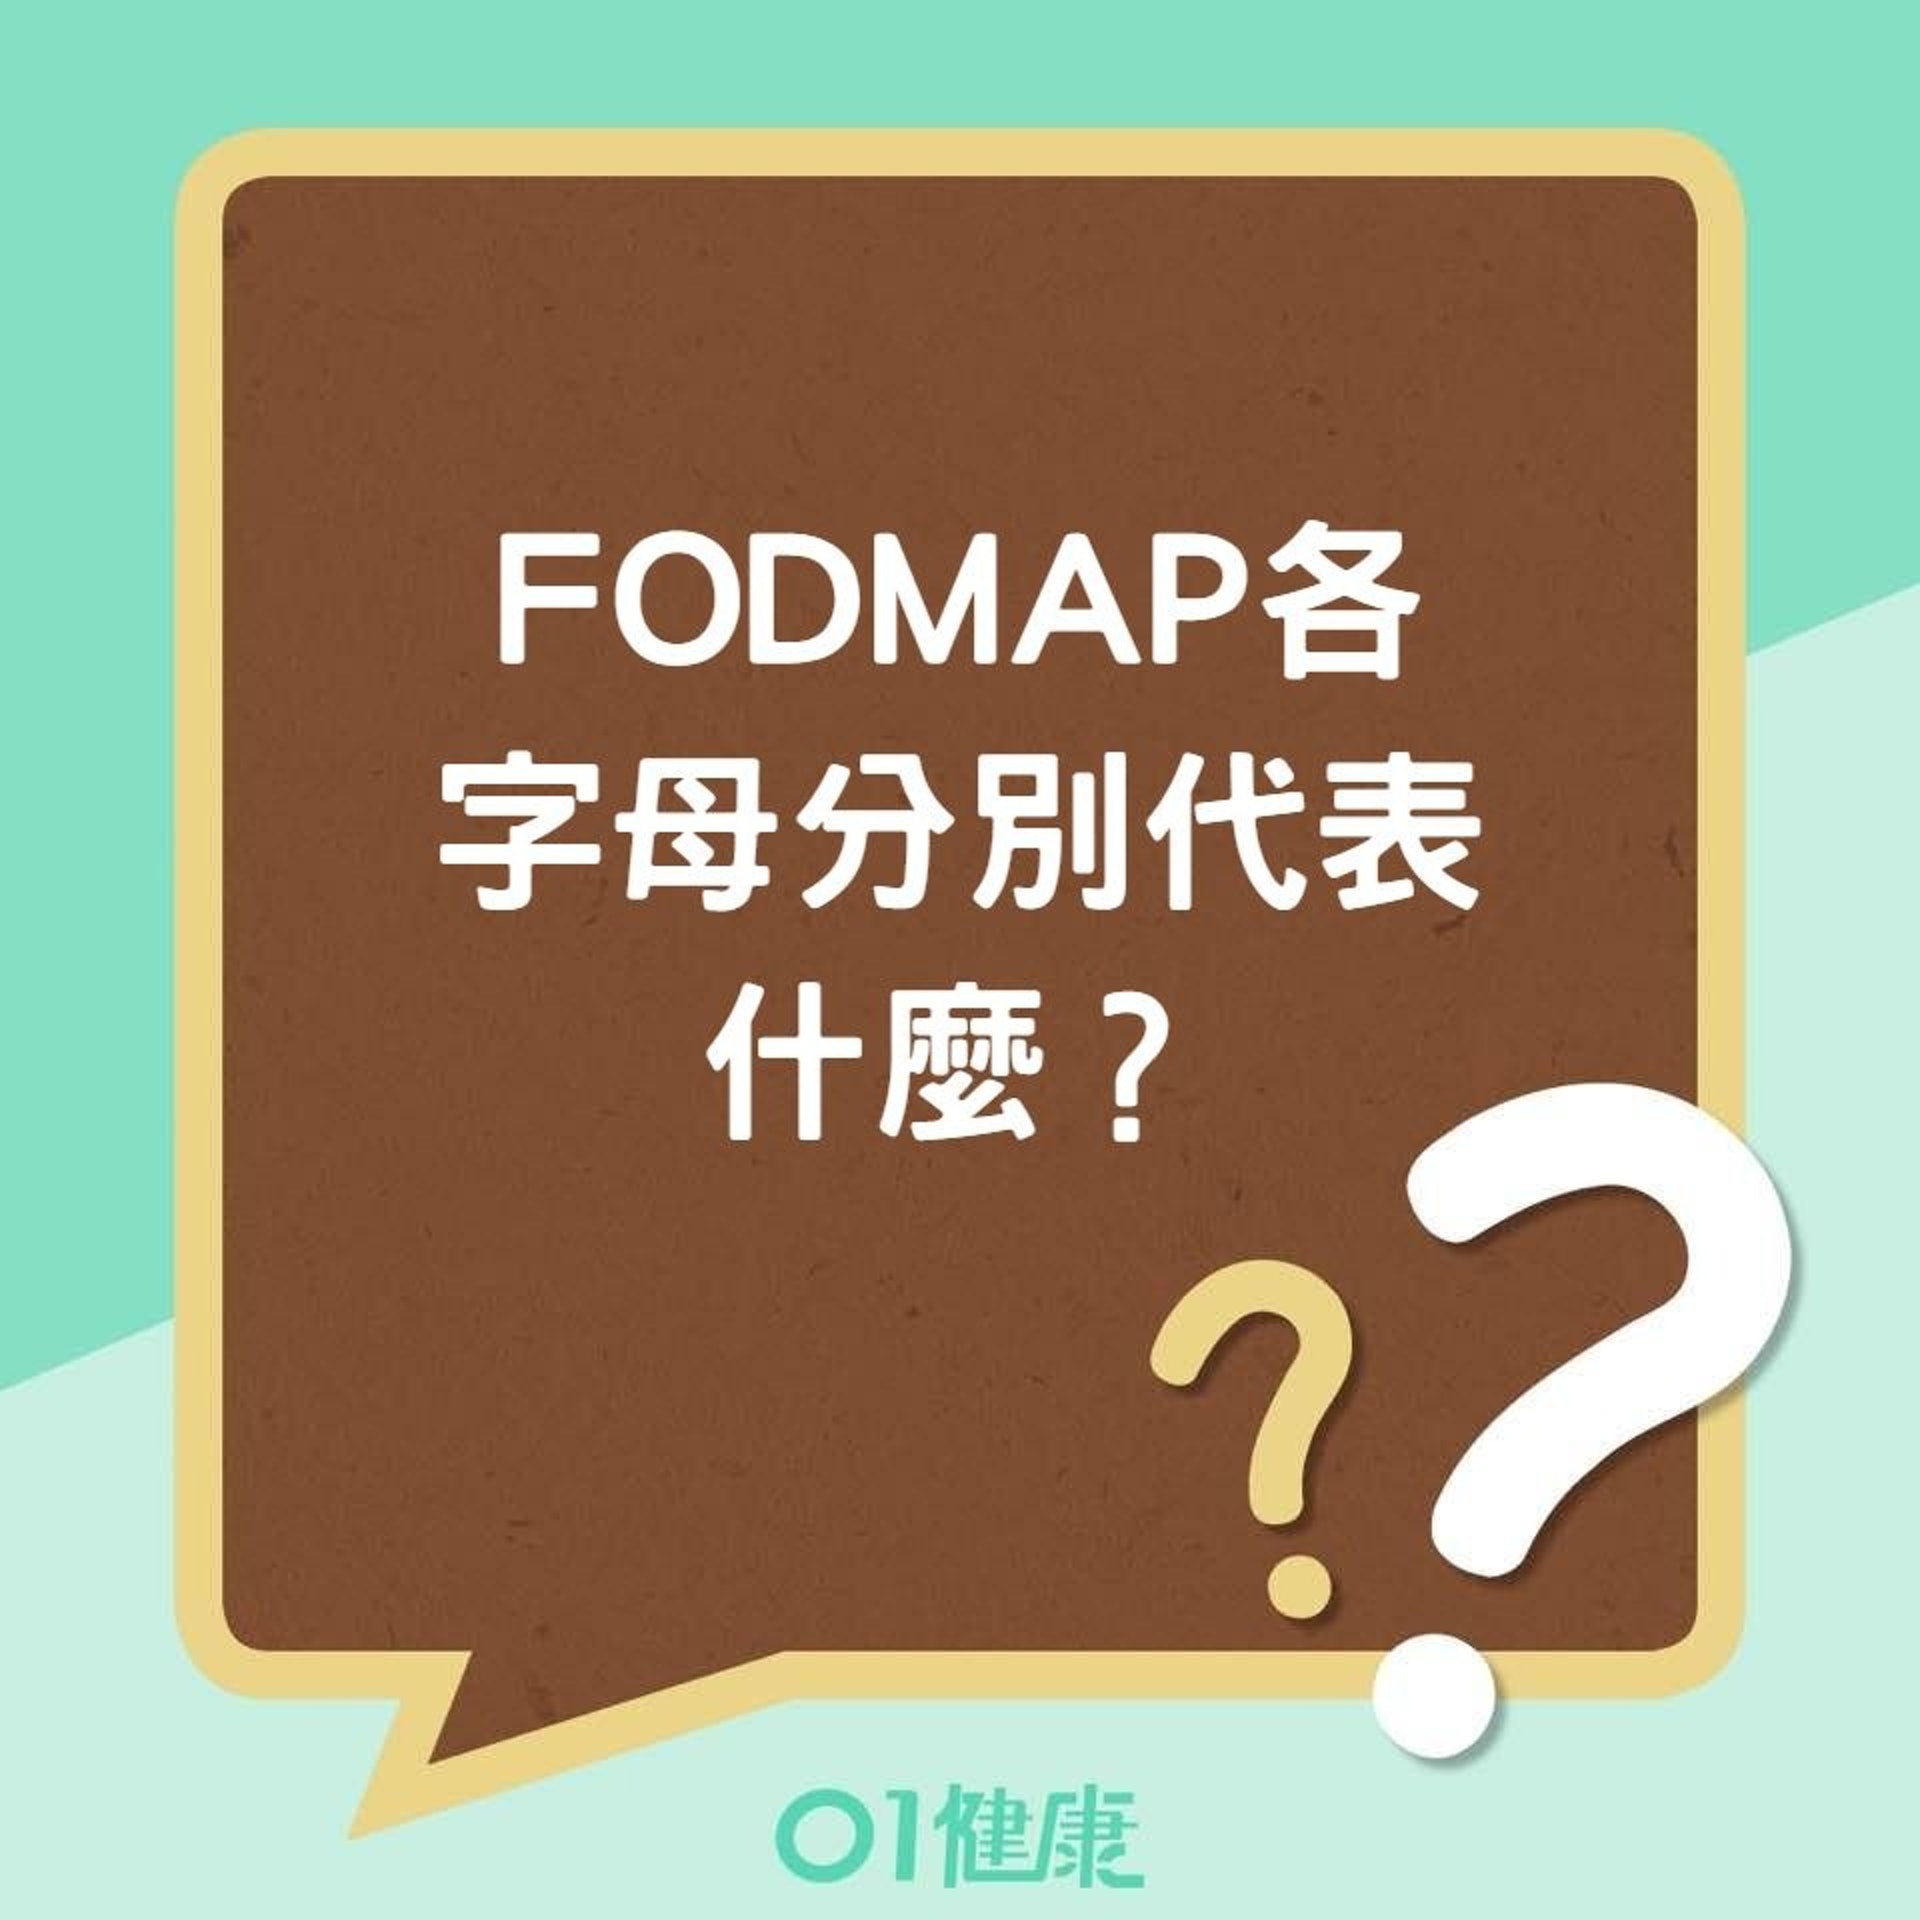 FODMAP各字母代表的意義及食物（01製圖）